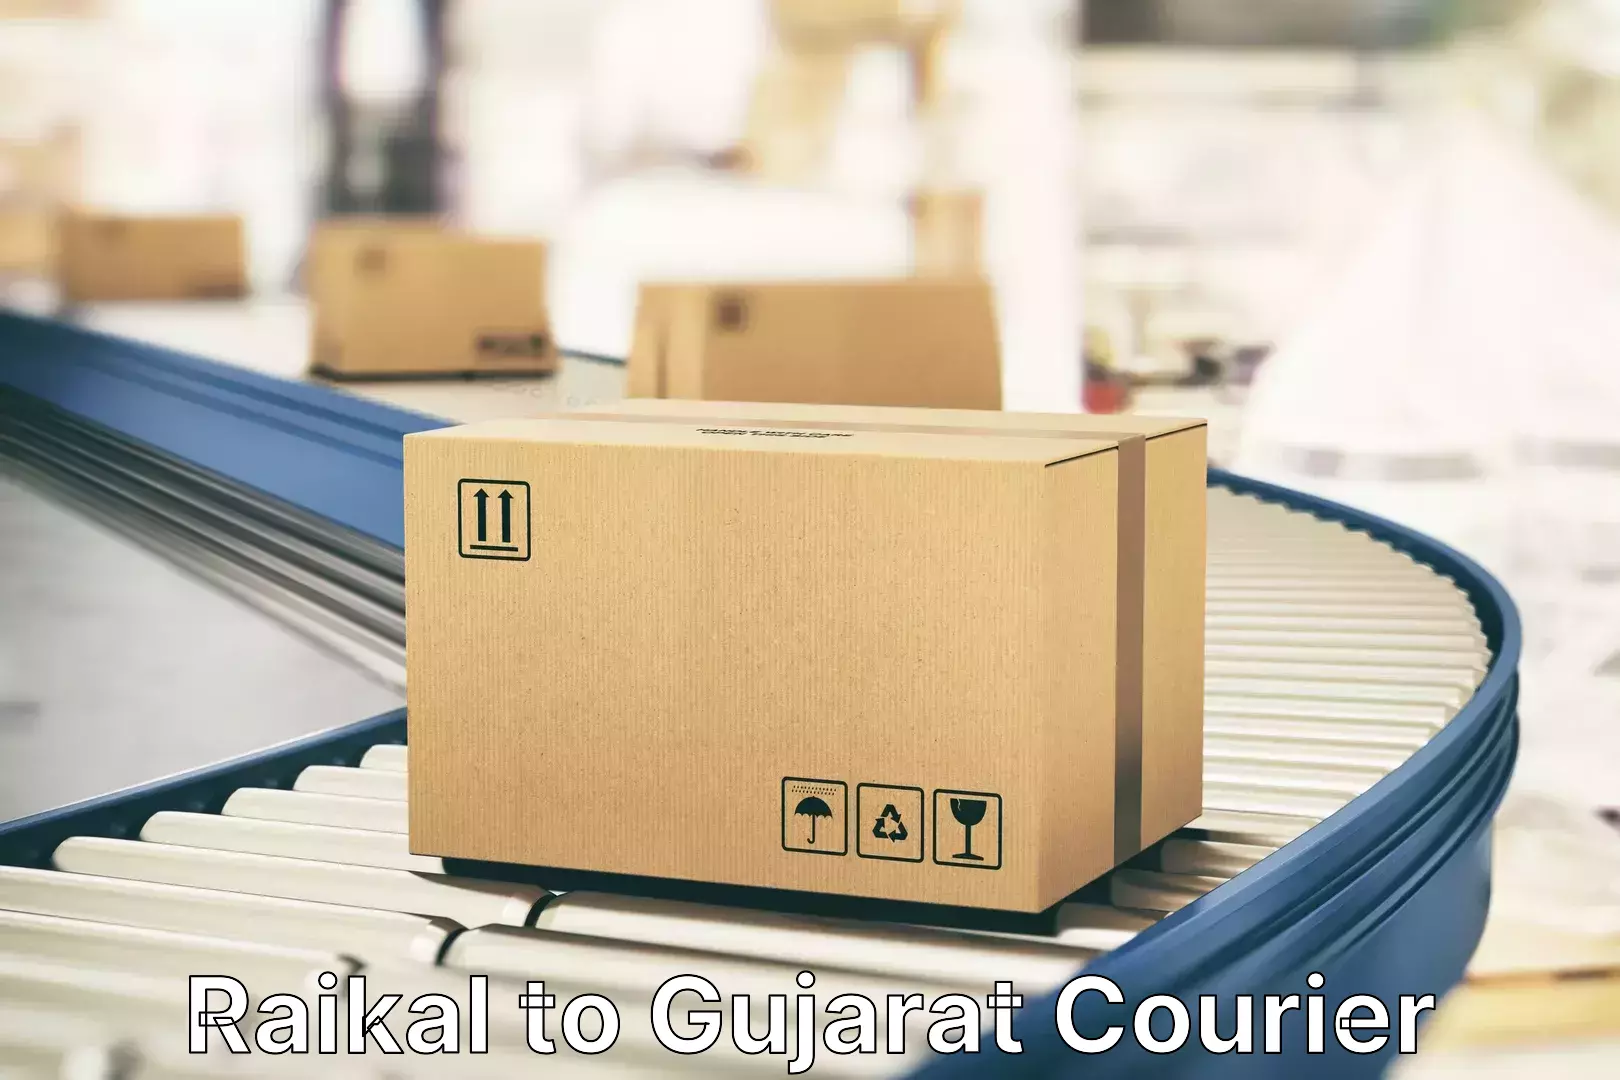 Door-to-door baggage service Raikal to Gujarat